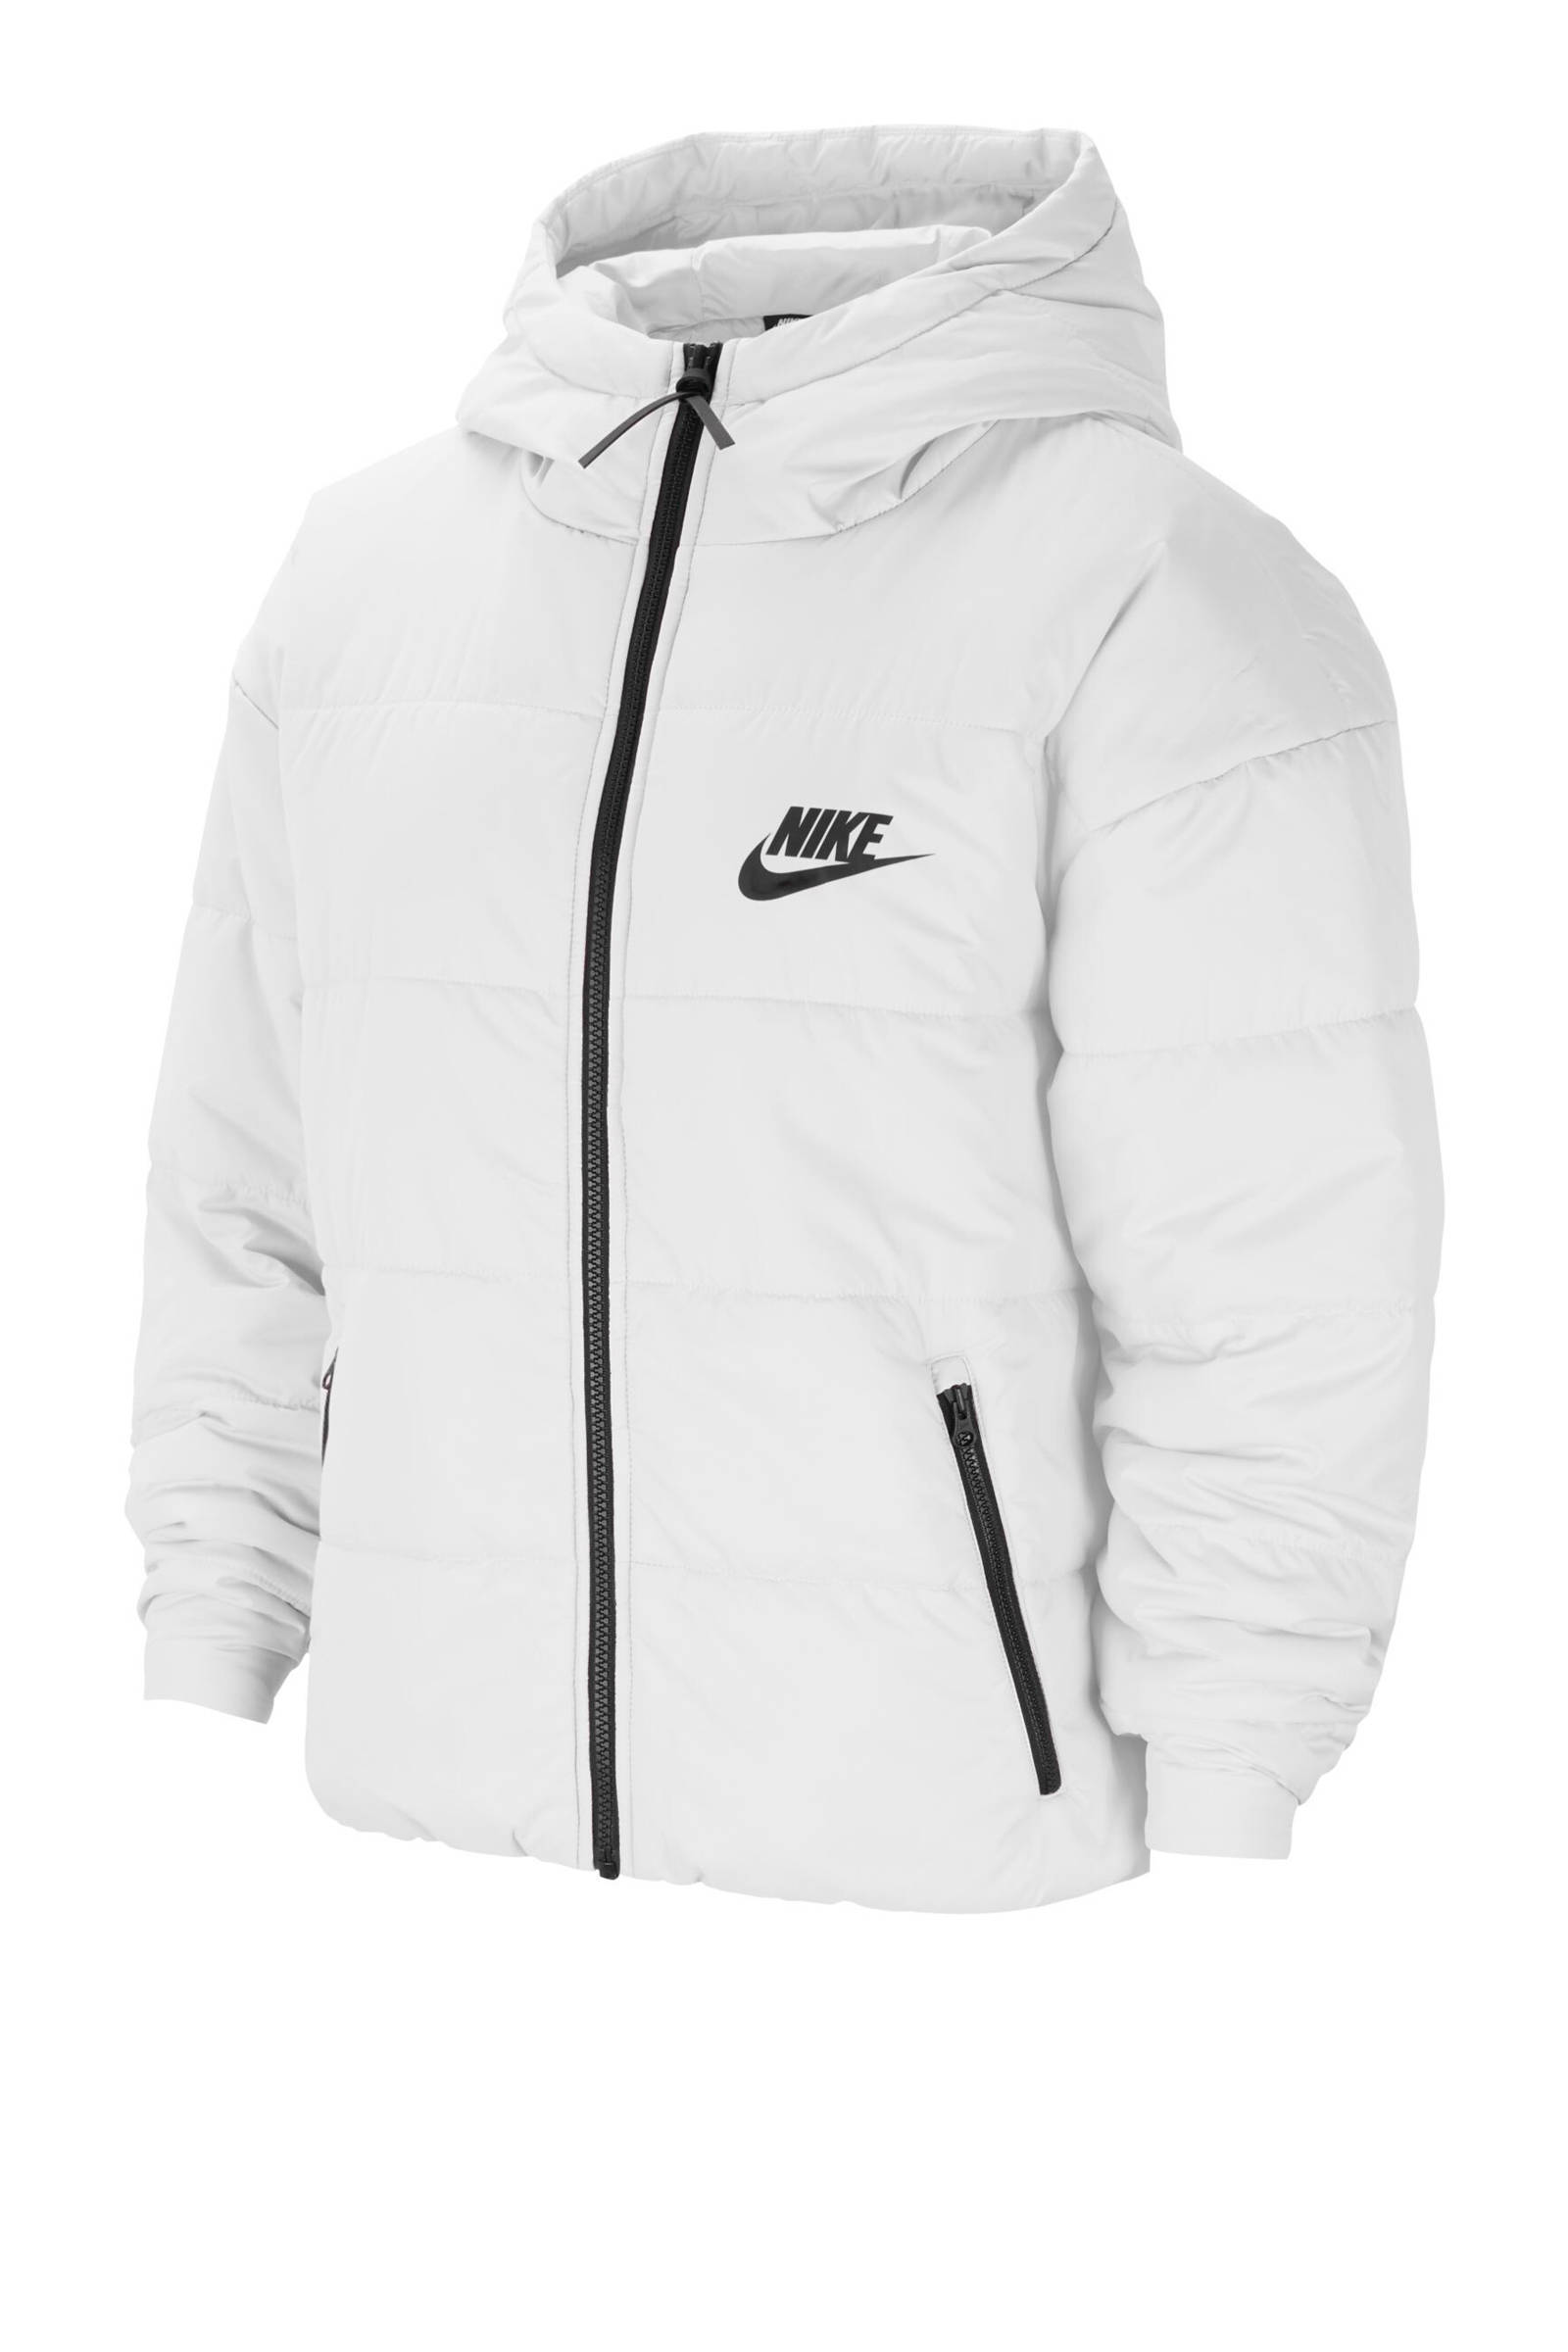 Nike gewatteerde jas wit online kopen